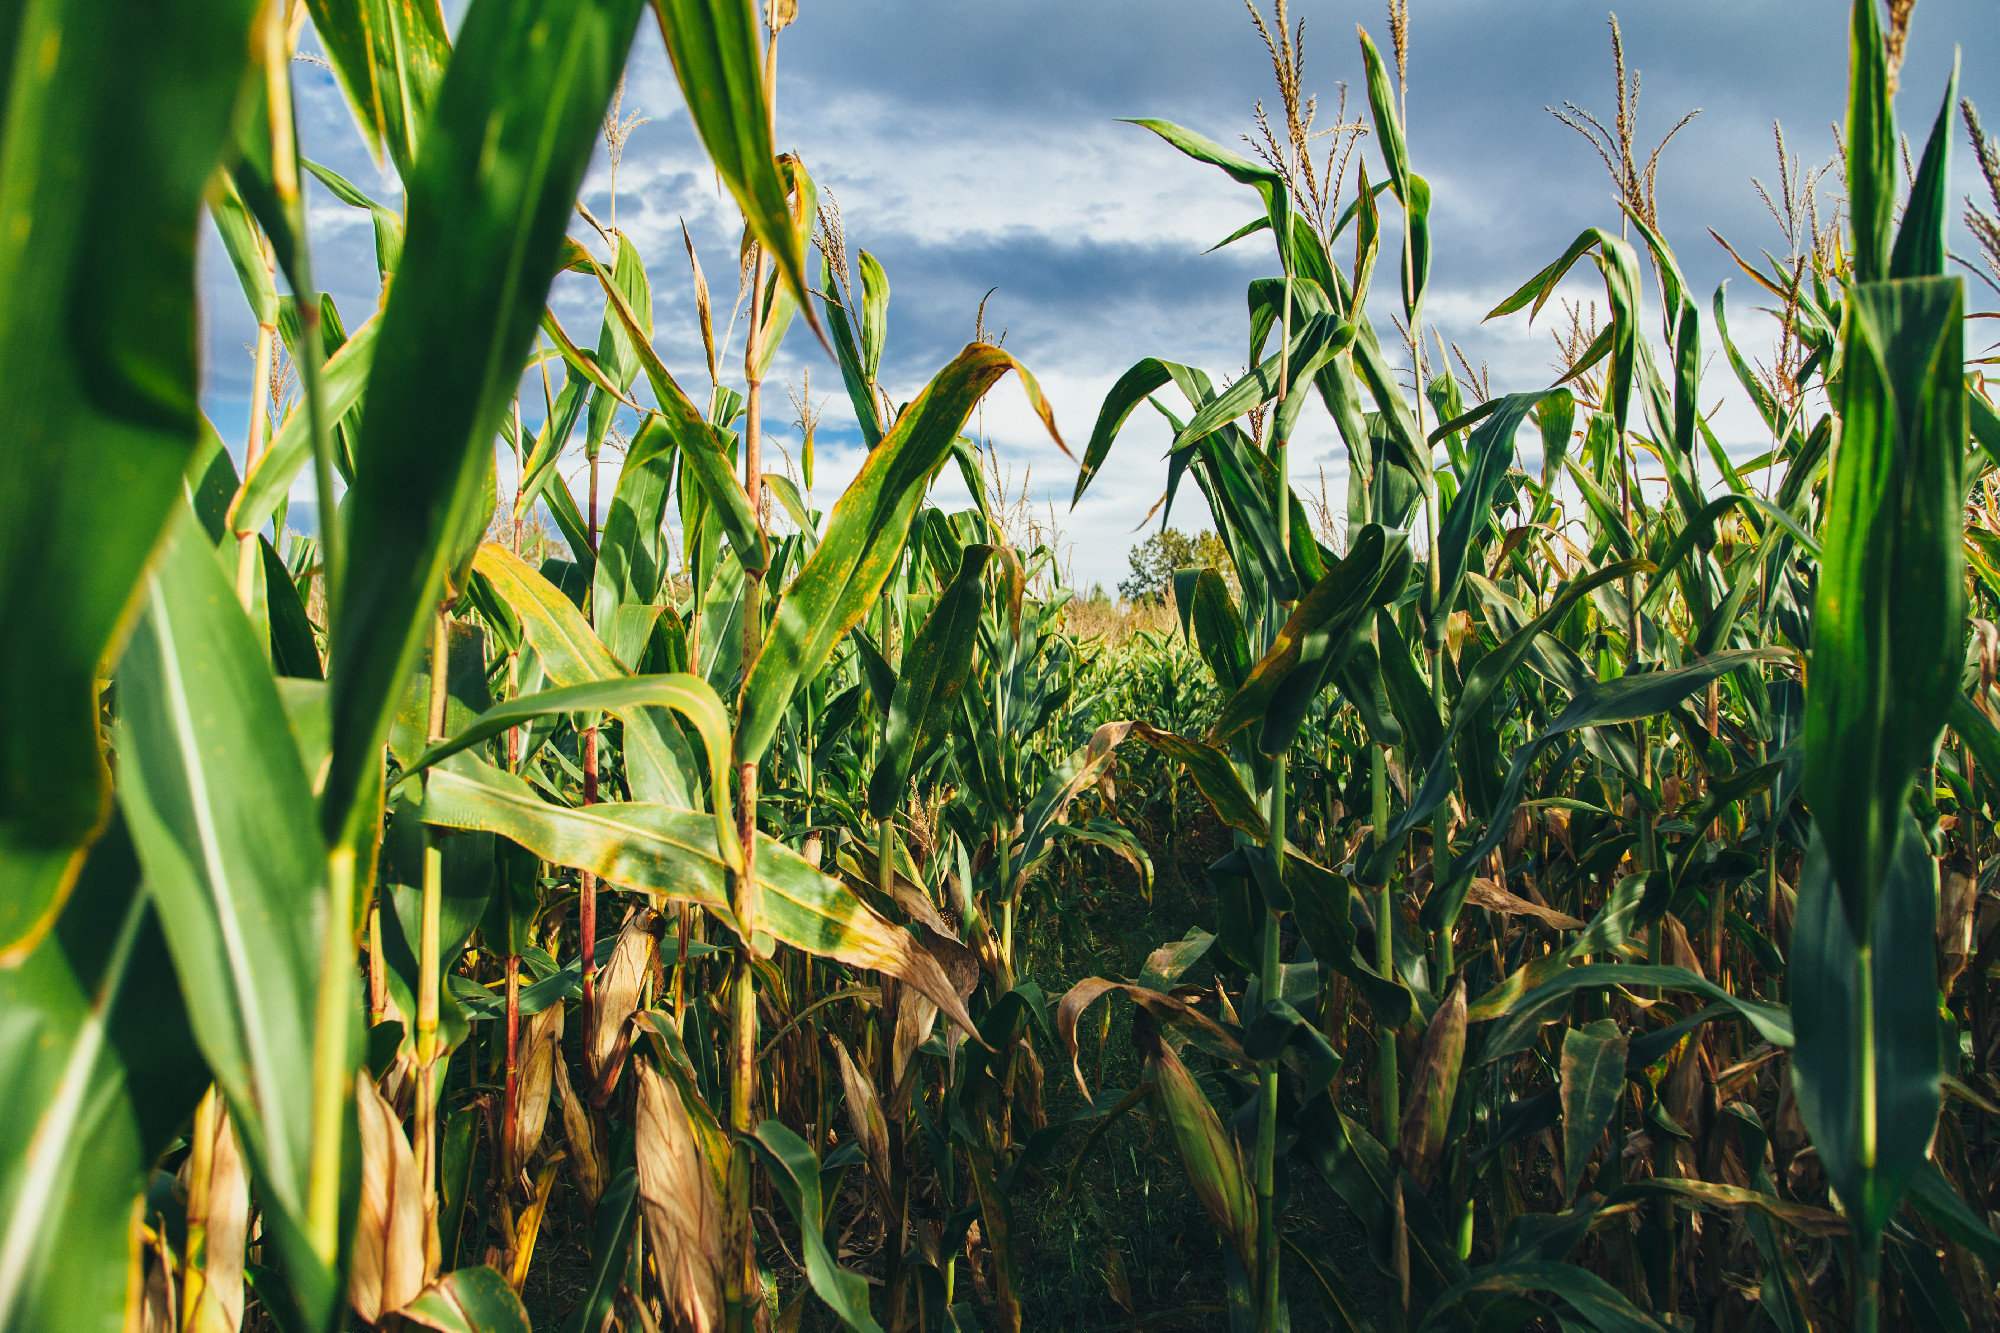 Ukrajnából származó, GMO-val szennyezett kukorica vetőmagot foglalt le a Nébih